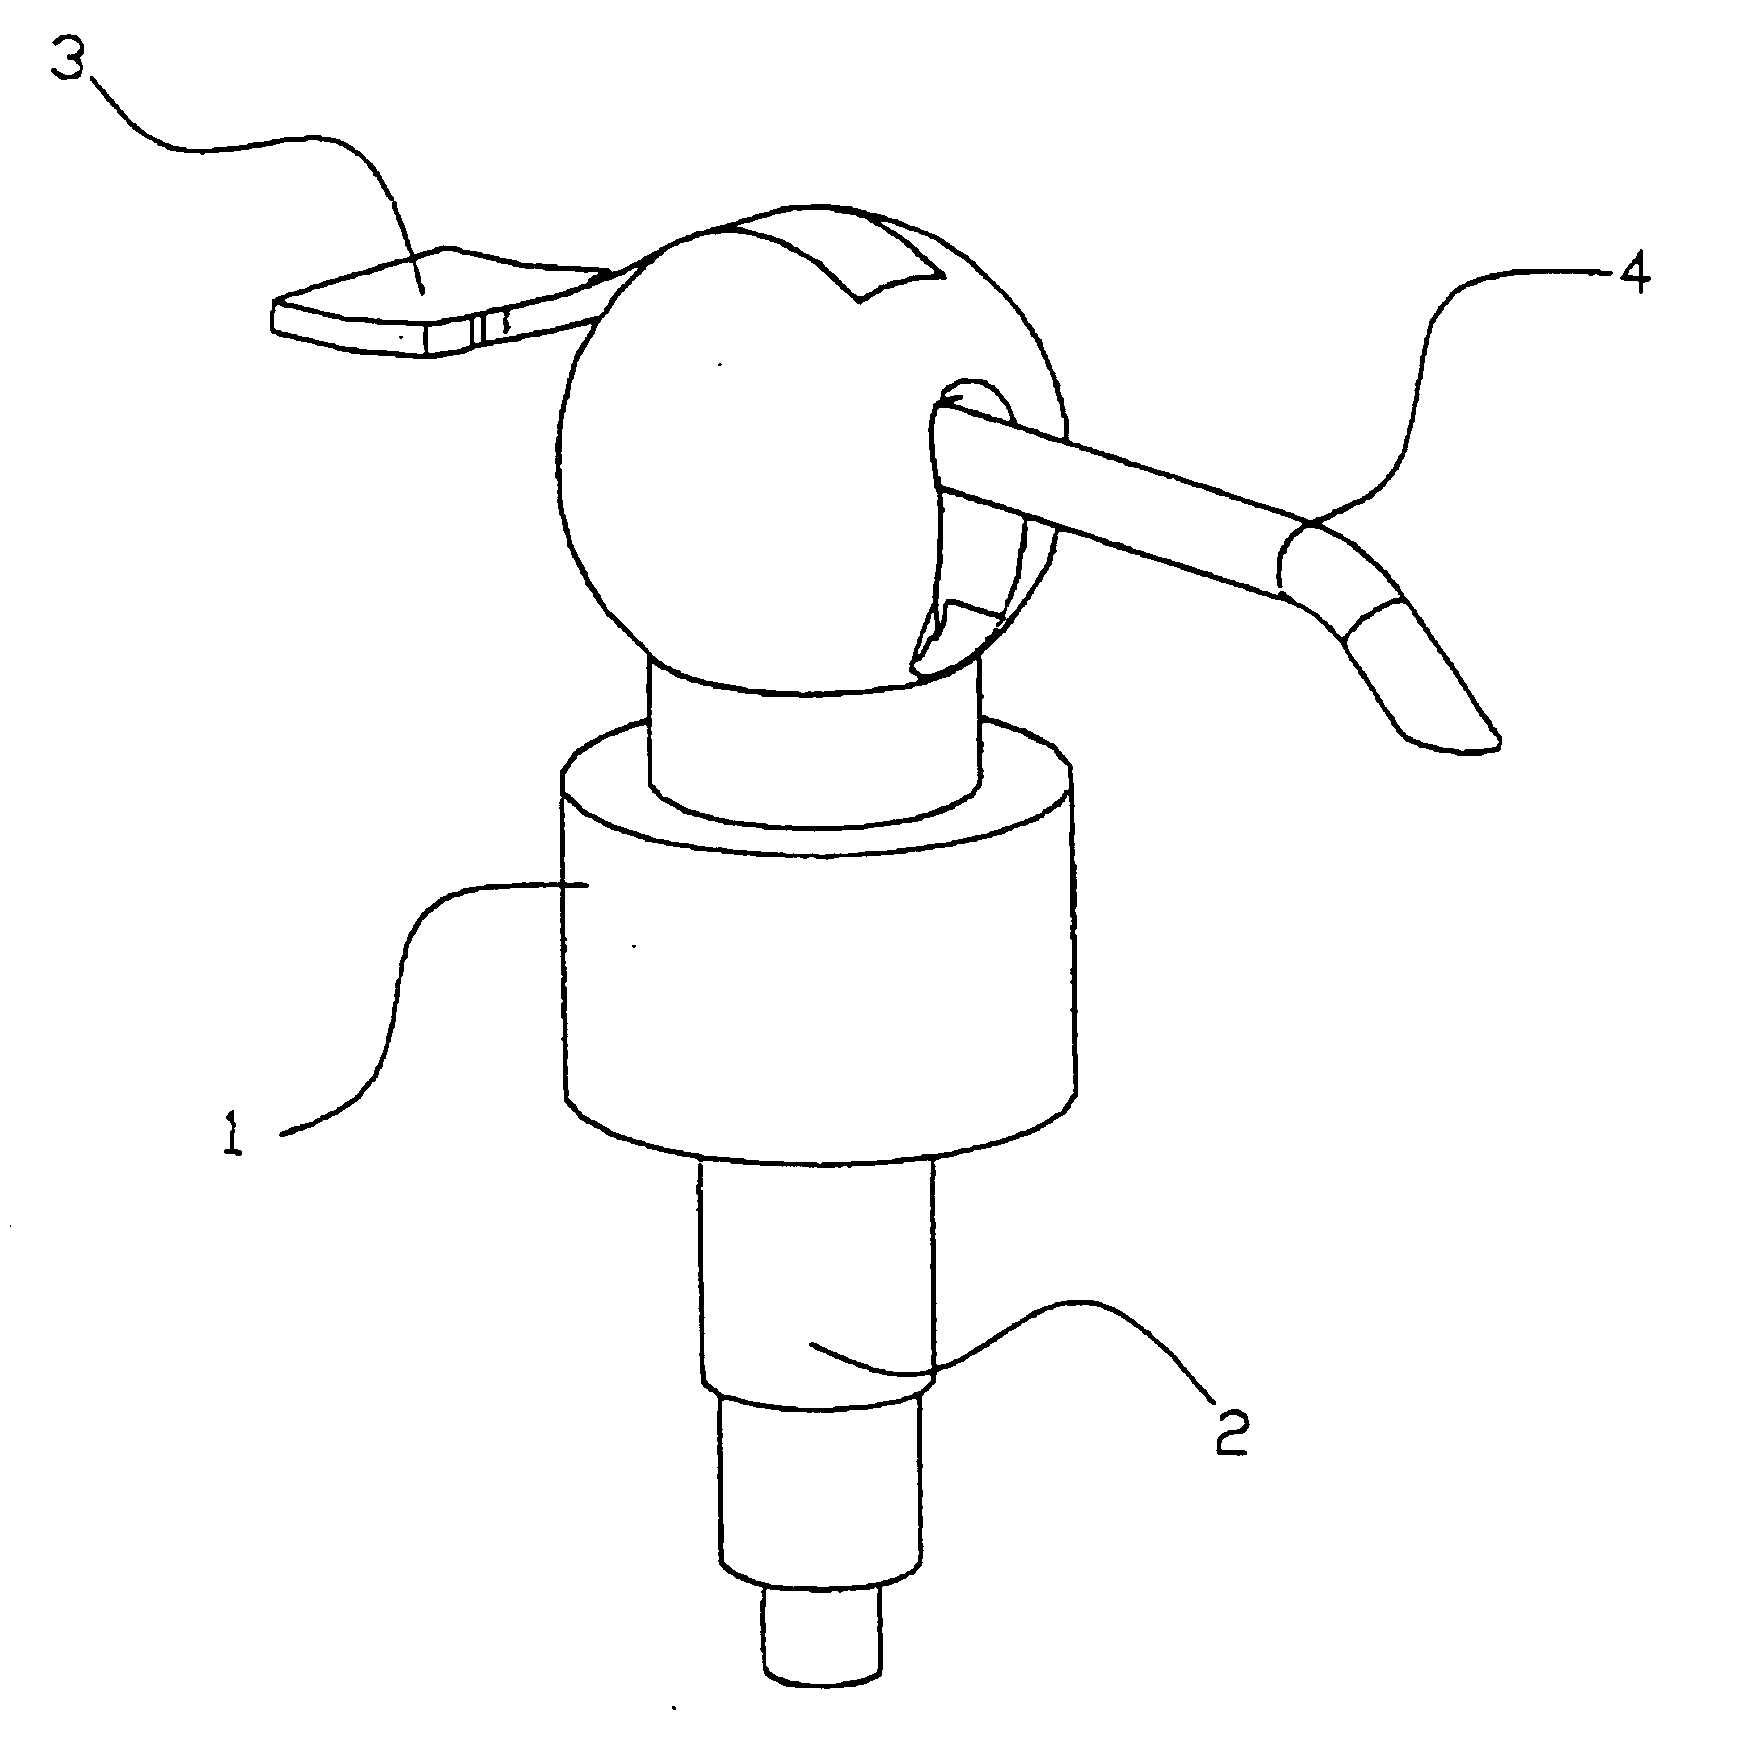 Dispensing cap with pressure lever